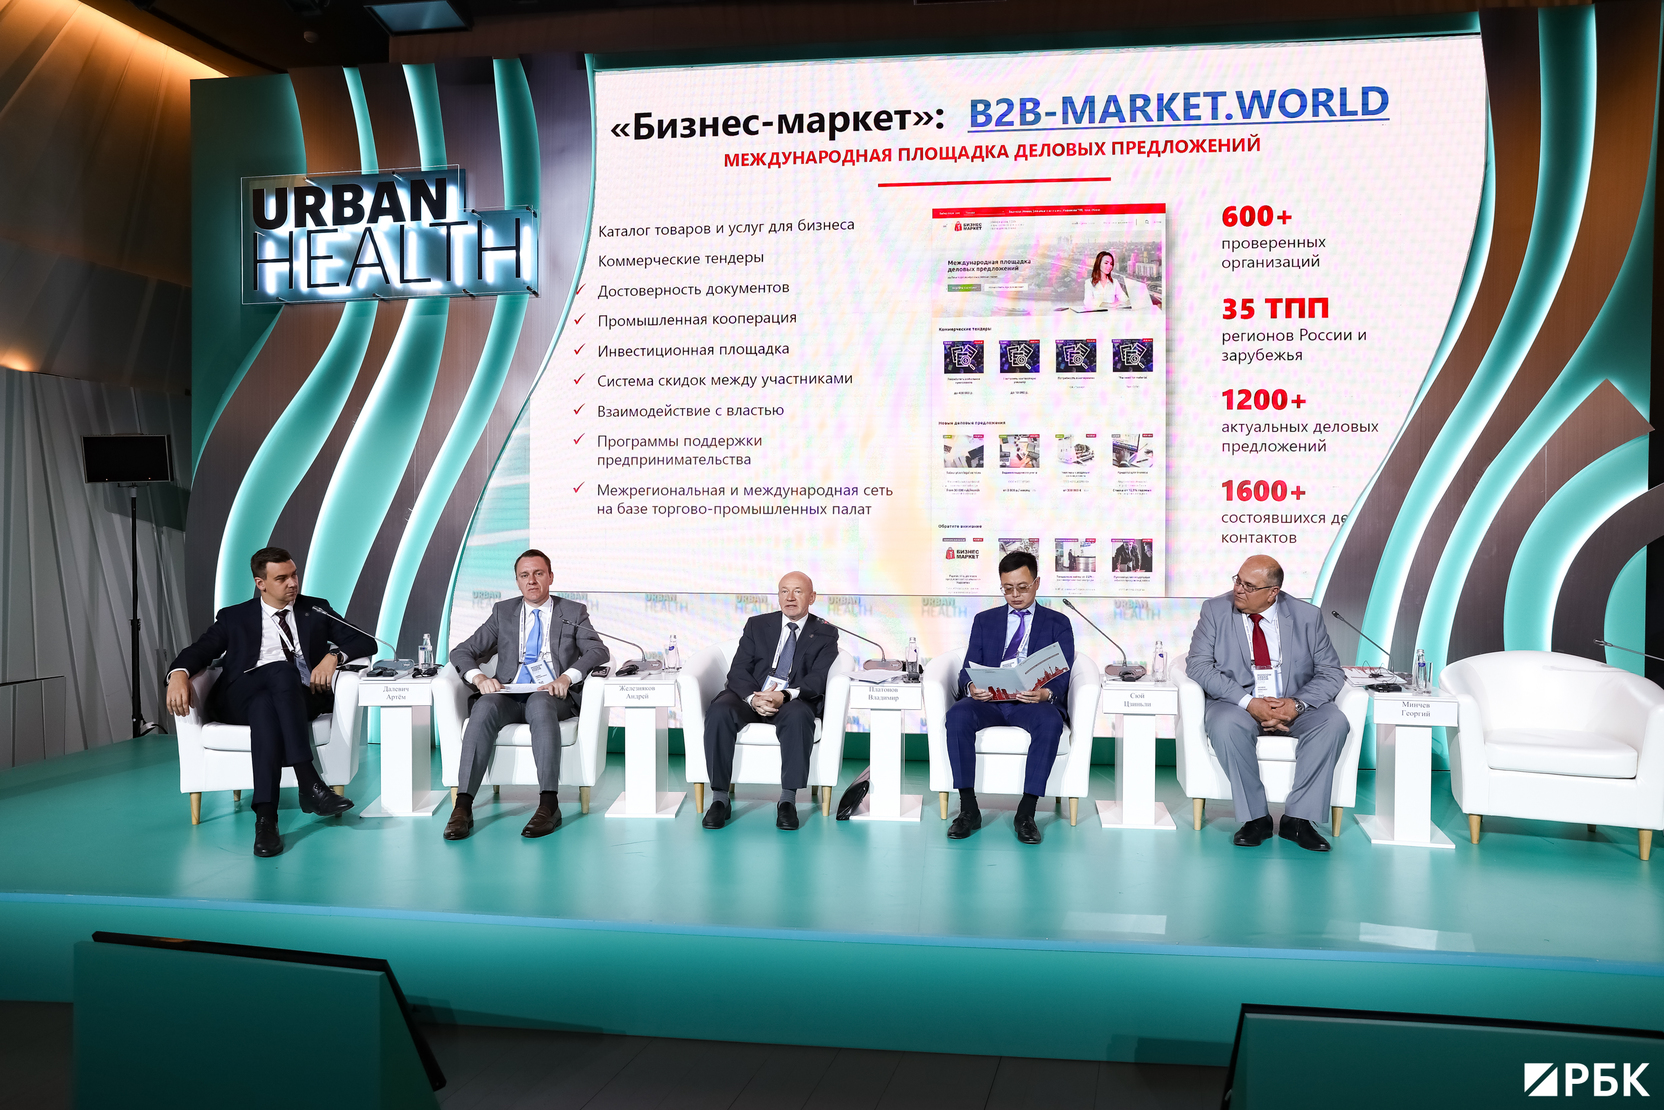 ТПП Москвы представила один из самых востребованных проектов в мире